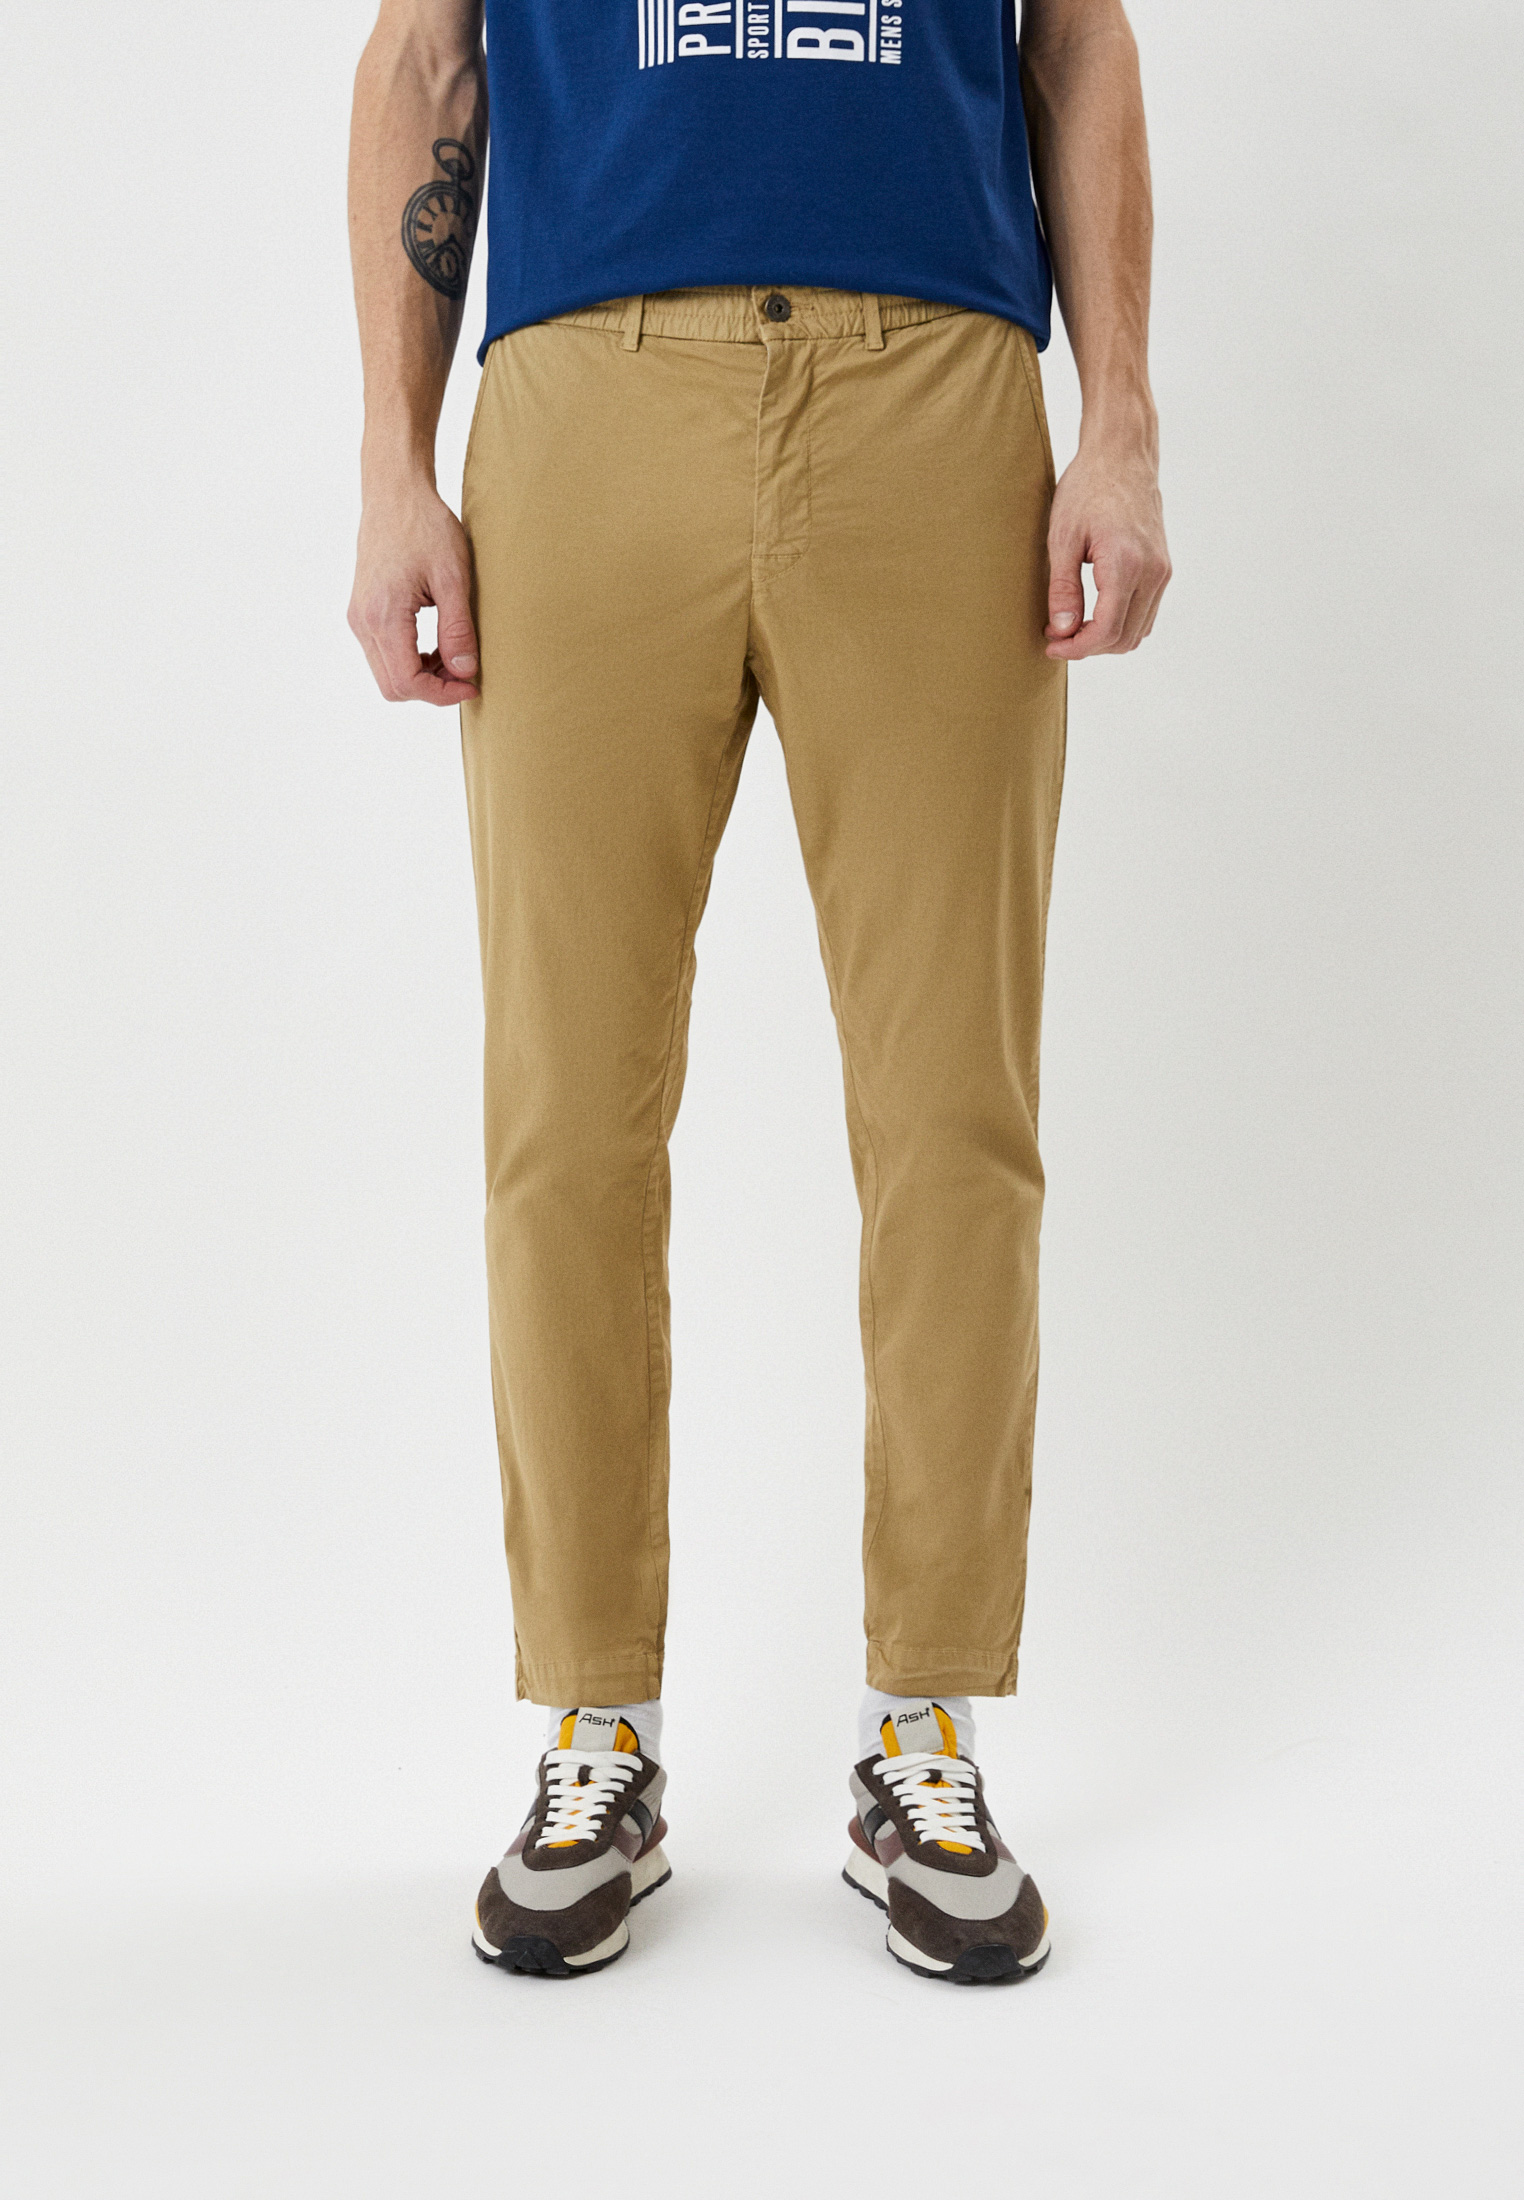 Мужские повседневные брюки Bikkembergs (Биккембергс) CP11001S3720: изображение 1